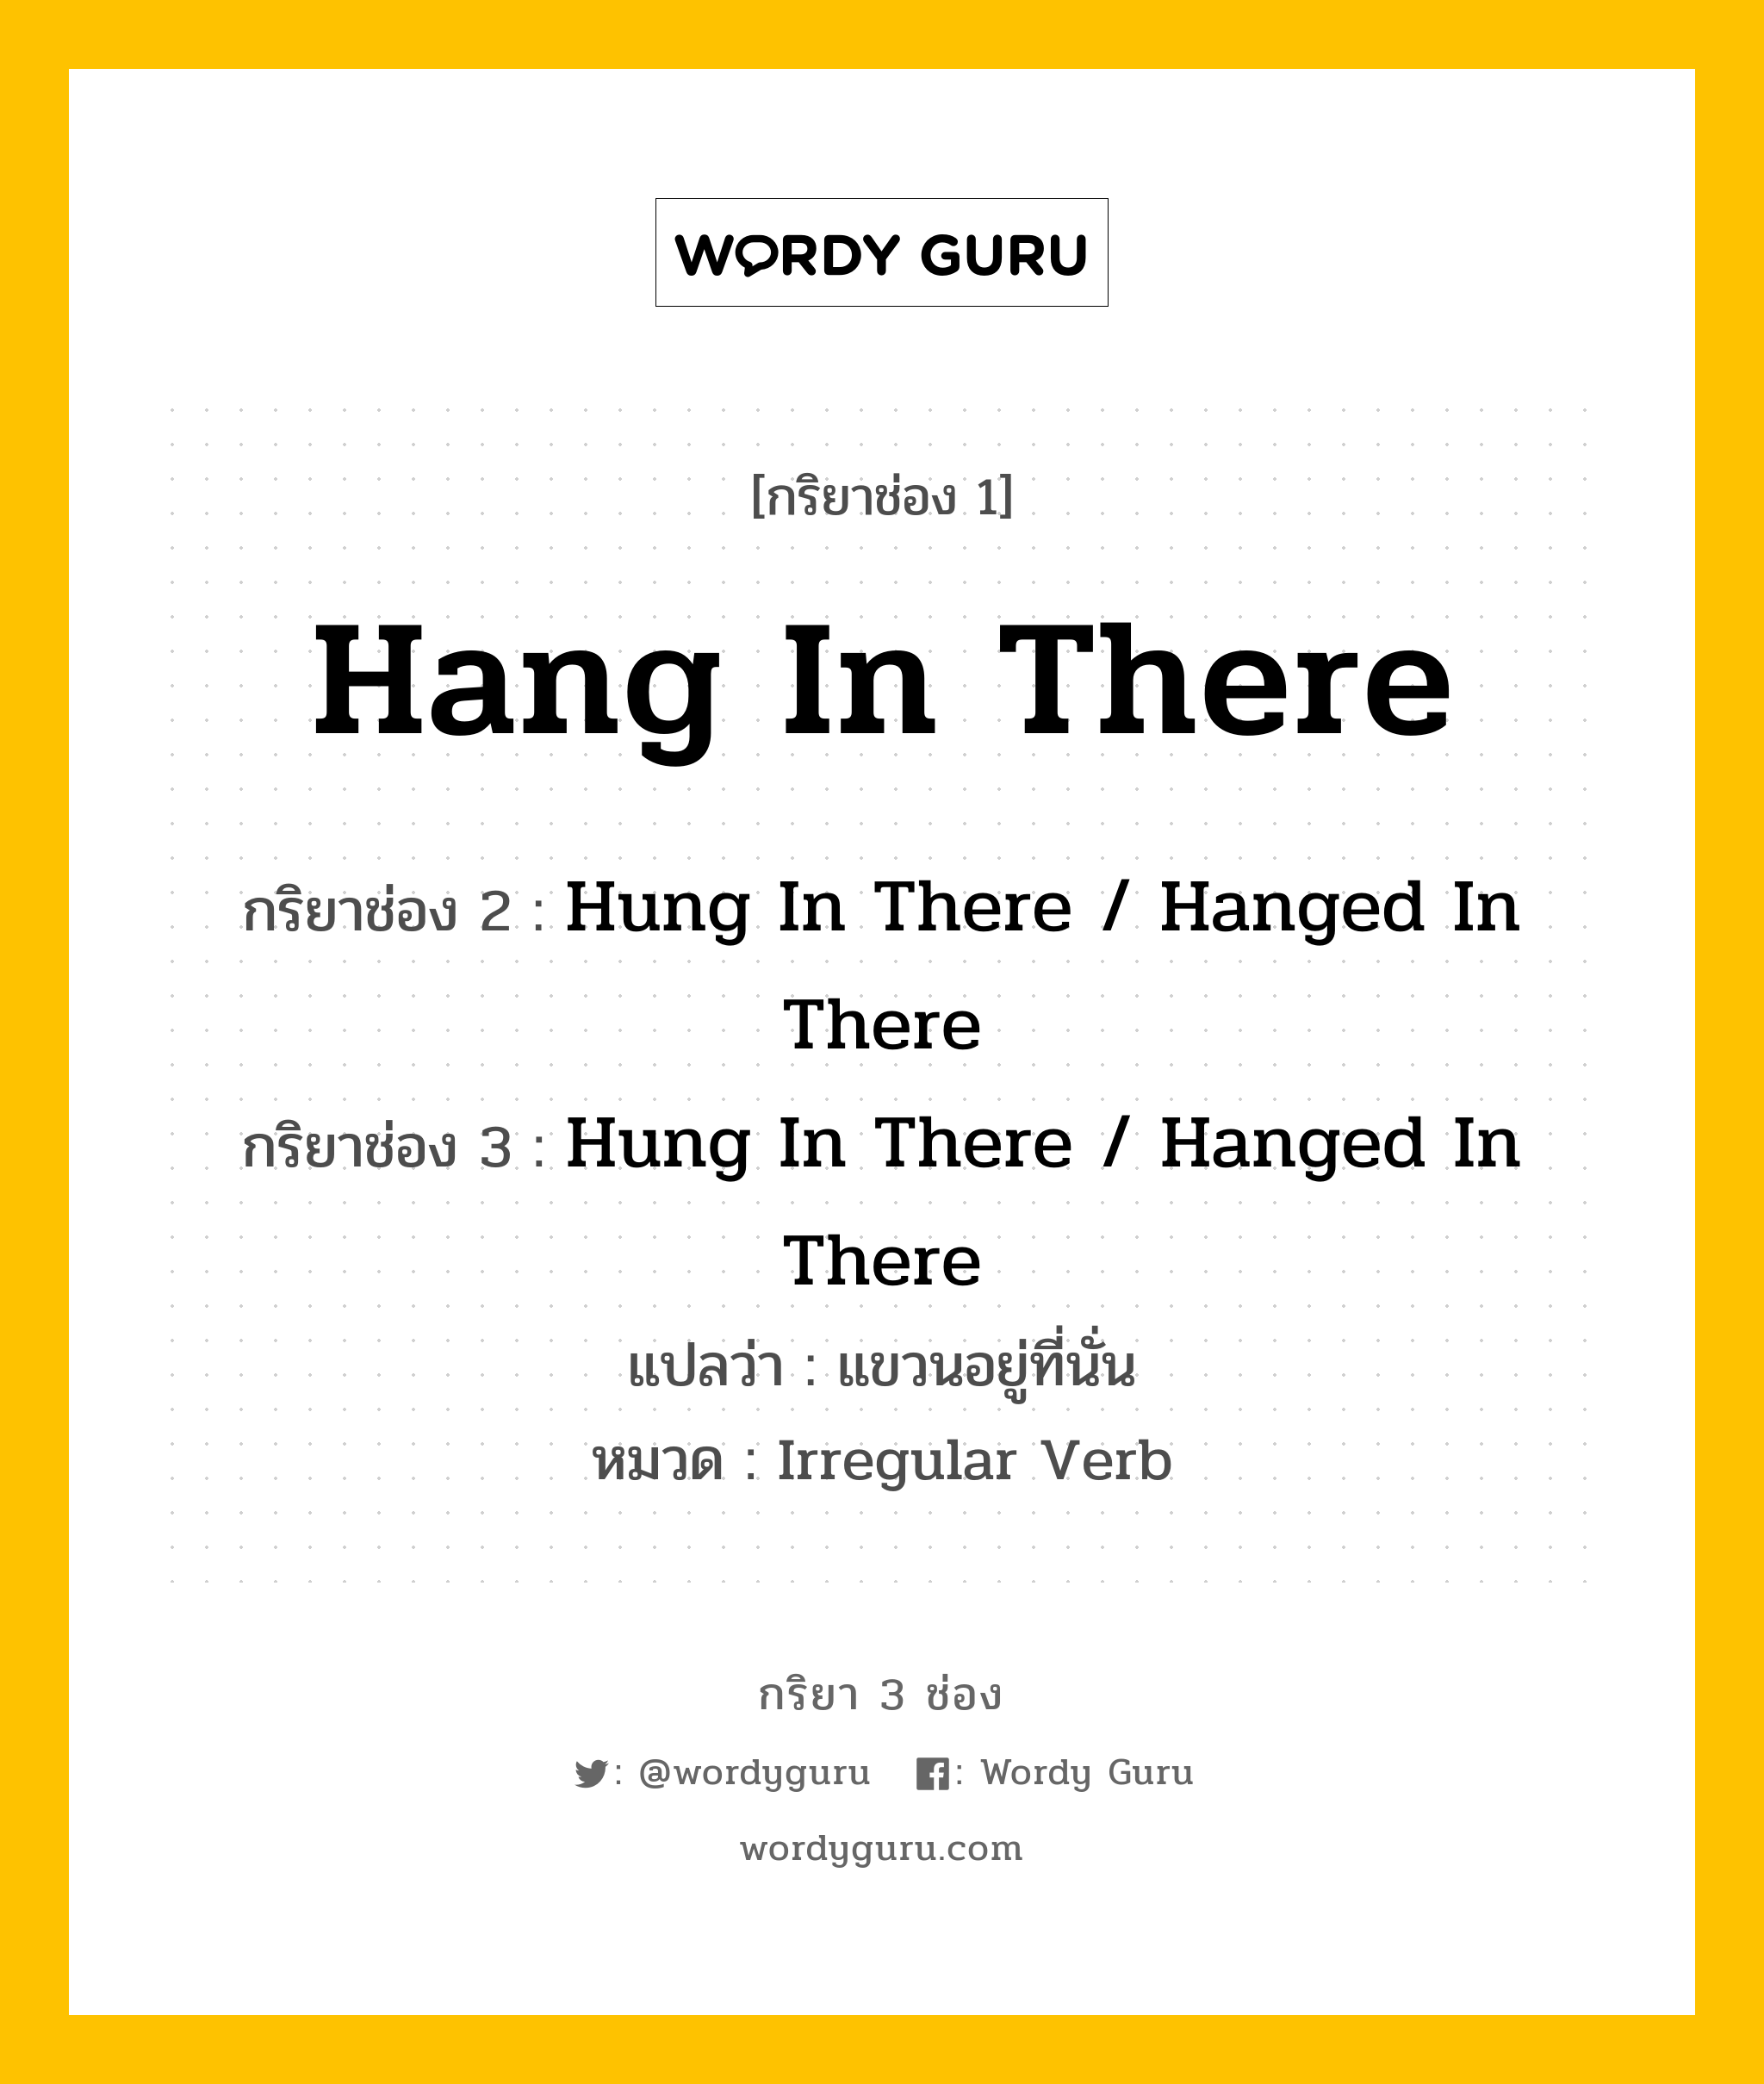 กริยา 3 ช่อง ของ Hang In There คืออะไร? มาดูคำอ่าน คำแปลกันเลย, กริยาช่อง 1 Hang In There กริยาช่อง 2 Hung In There / Hanged In There กริยาช่อง 3 Hung In There / Hanged In There แปลว่า แขวนอยู่ที่นั่น หมวด Irregular Verb หมวด Irregular Verb